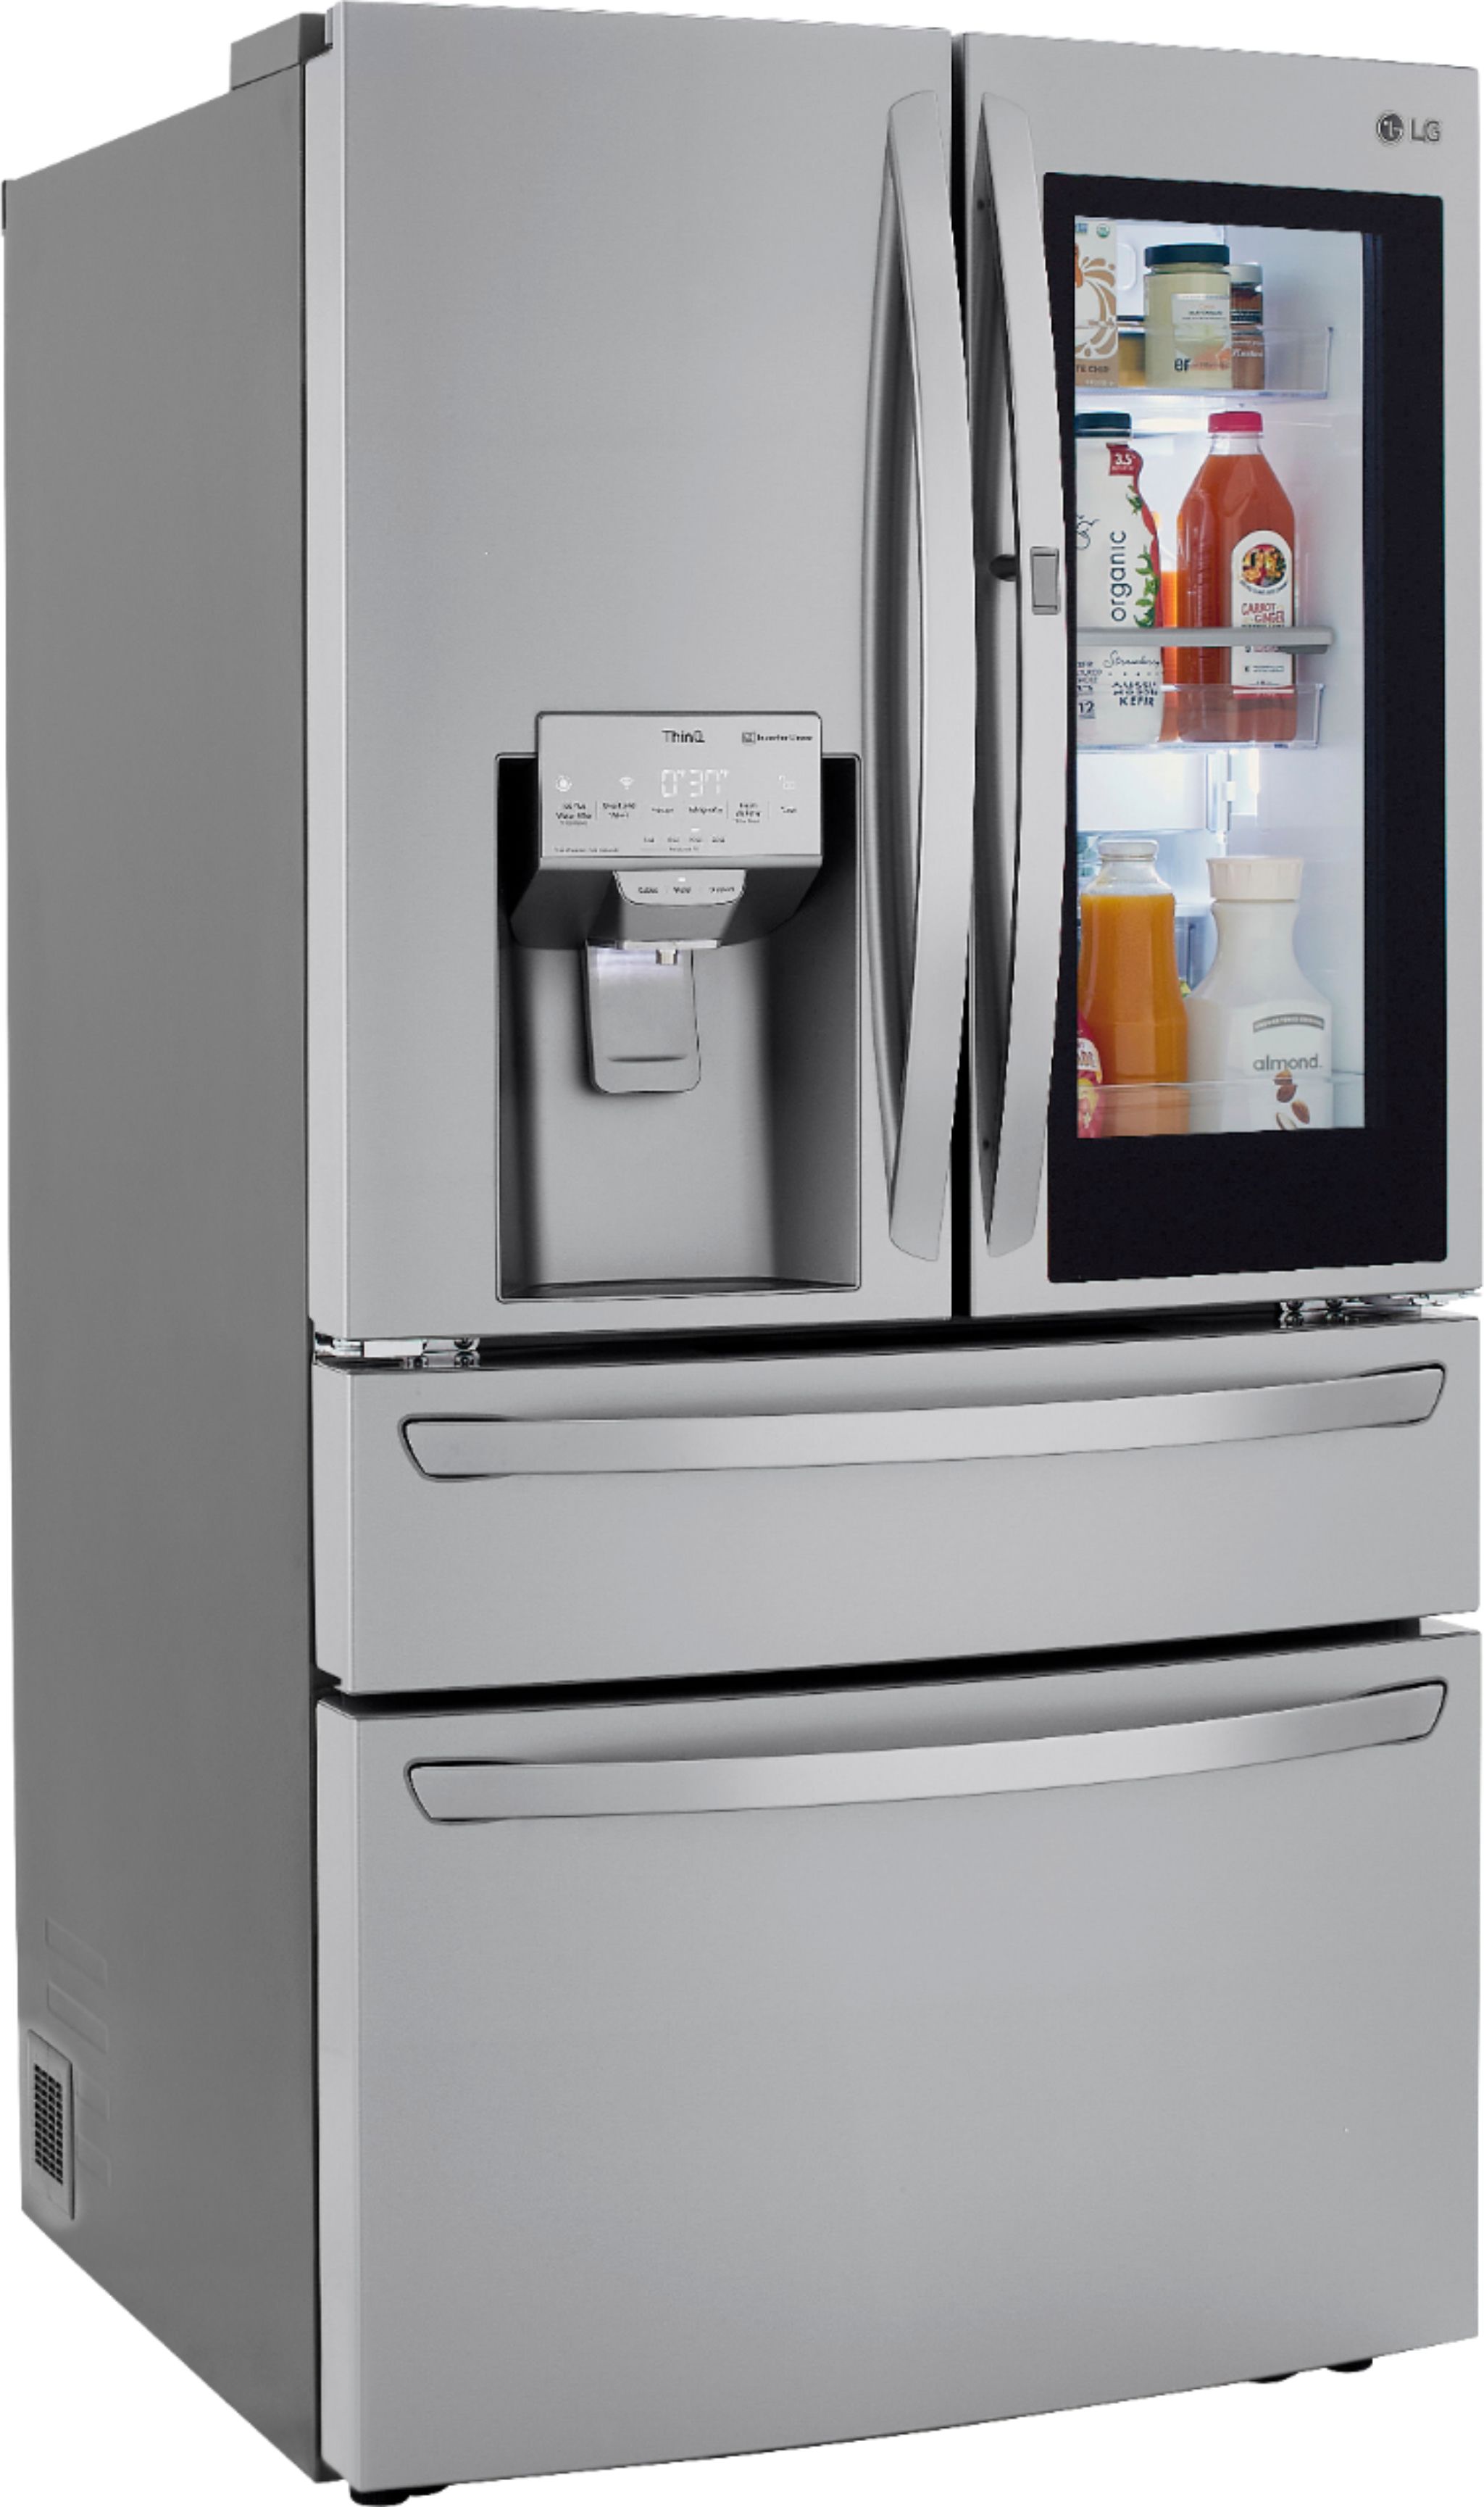 Angle View: LG - 29.5 Cu. Ft. 4-Door French Door Refrigerator with InstaView Door-in-Door and Craft Ice - Stainless steel